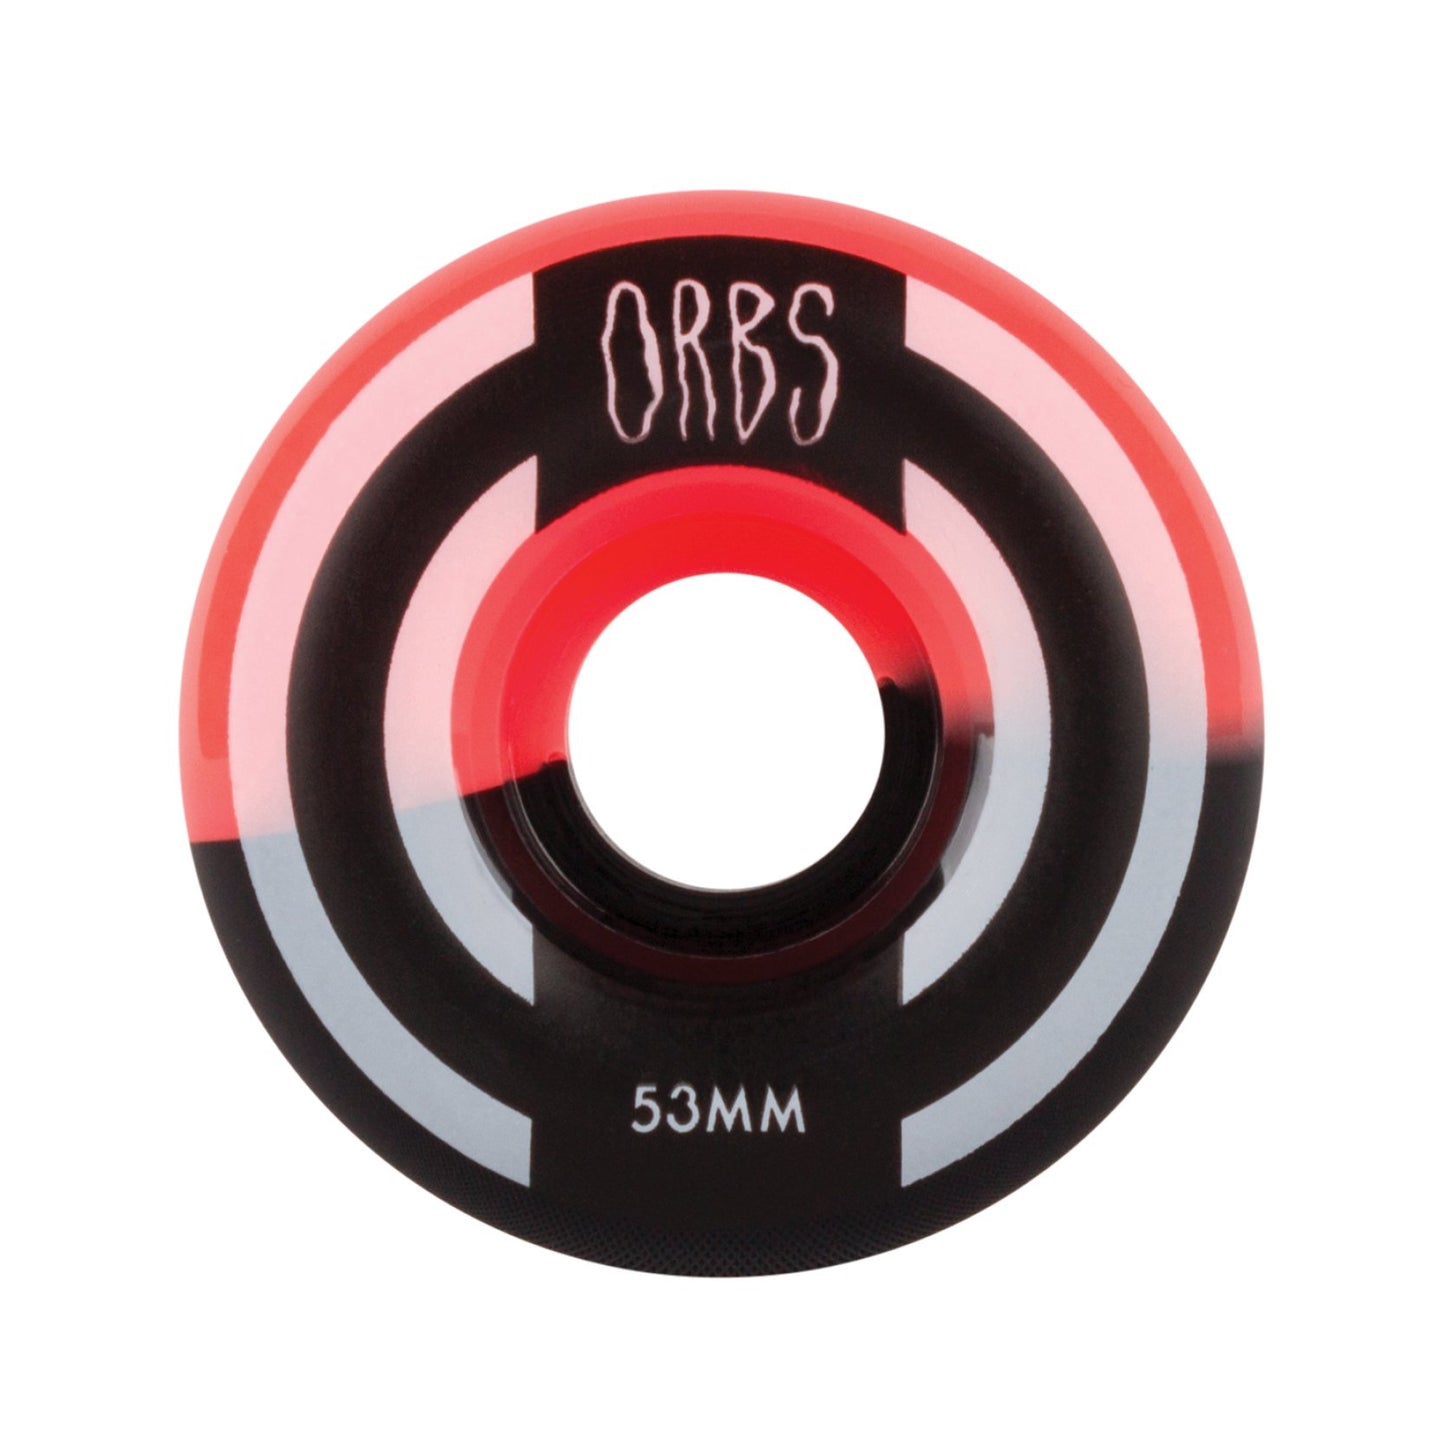 ORBS Apparitions スプリット ホイール 53mm - ネオンコーラル/ブラック